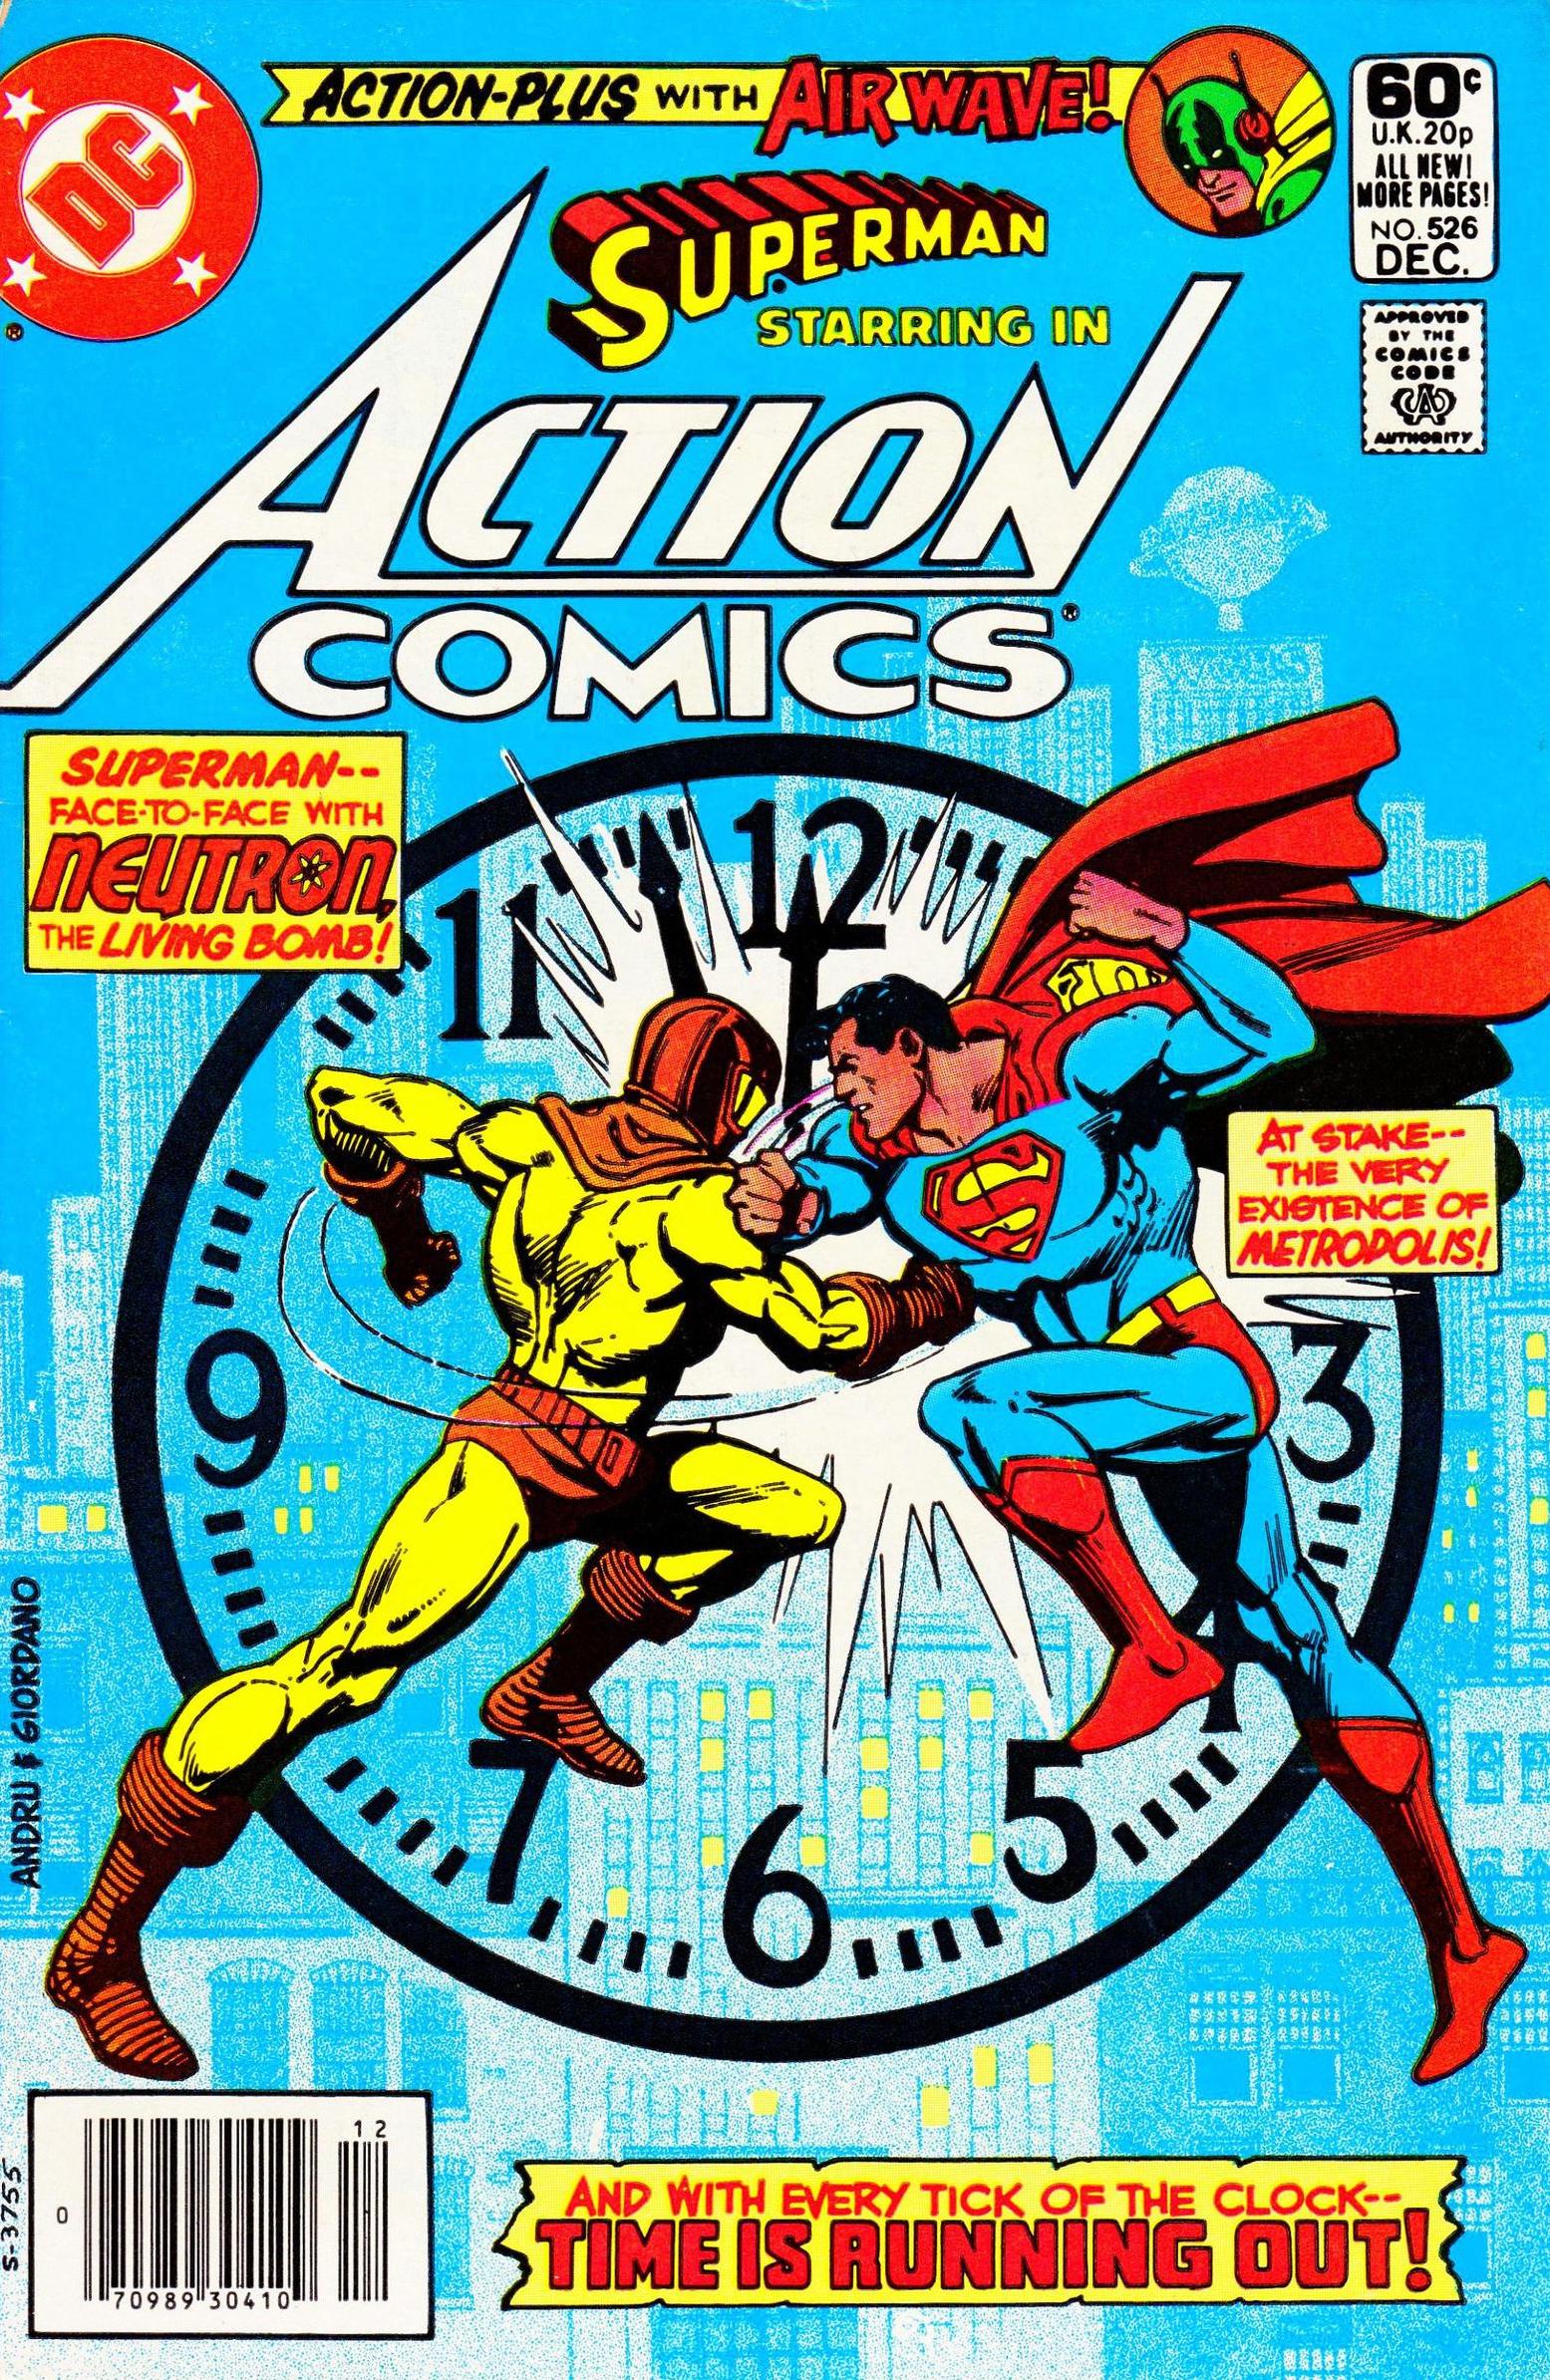 13 Underrated Action Comics Covers 13th Dimension Comics Creators Culture